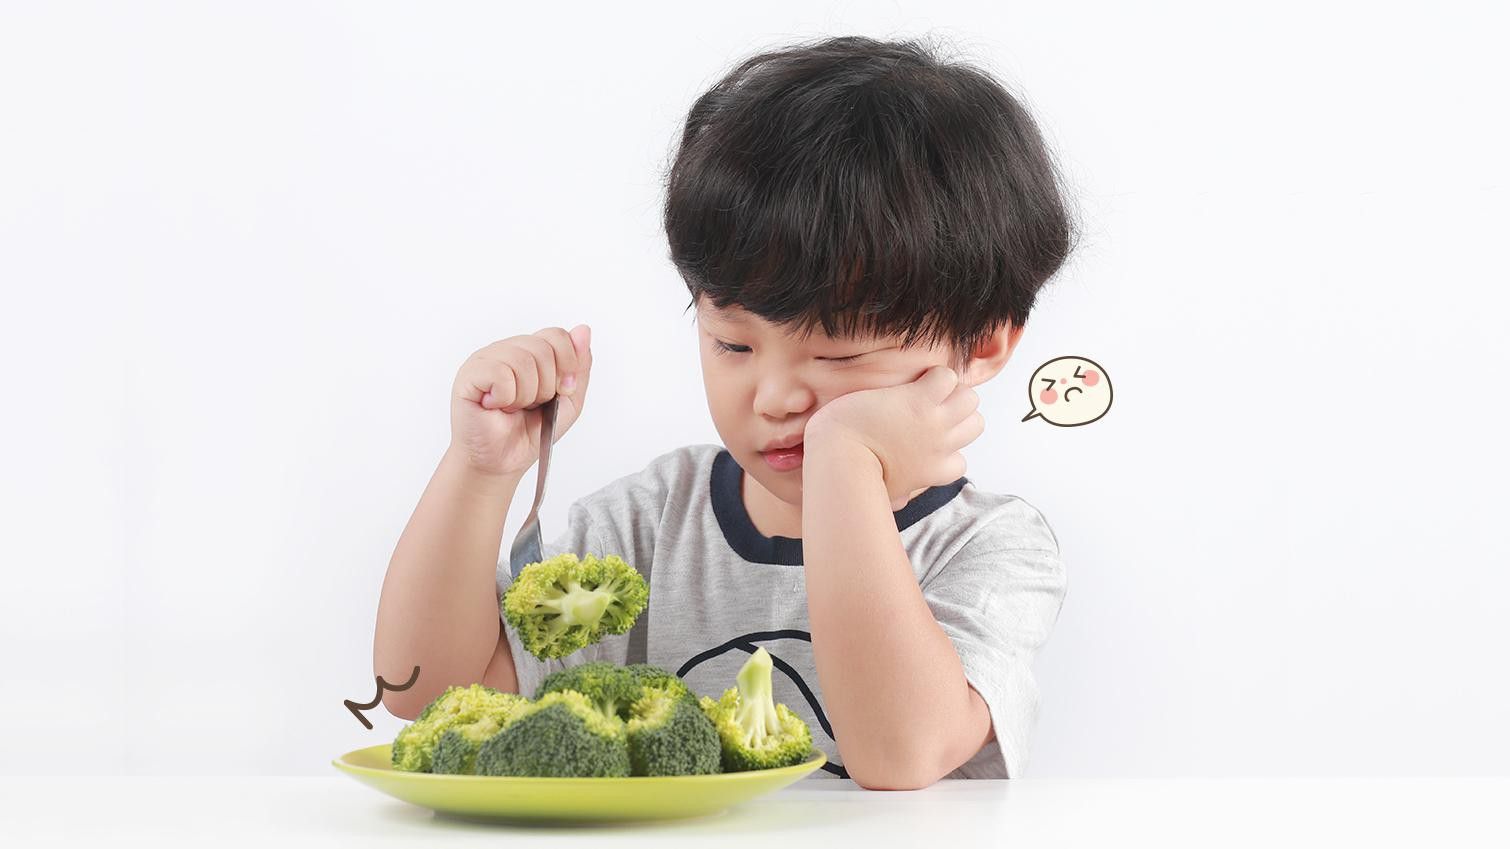 Ini 5 Cara Mengatasi Anak Sulit Makan Buah dan Sayuran